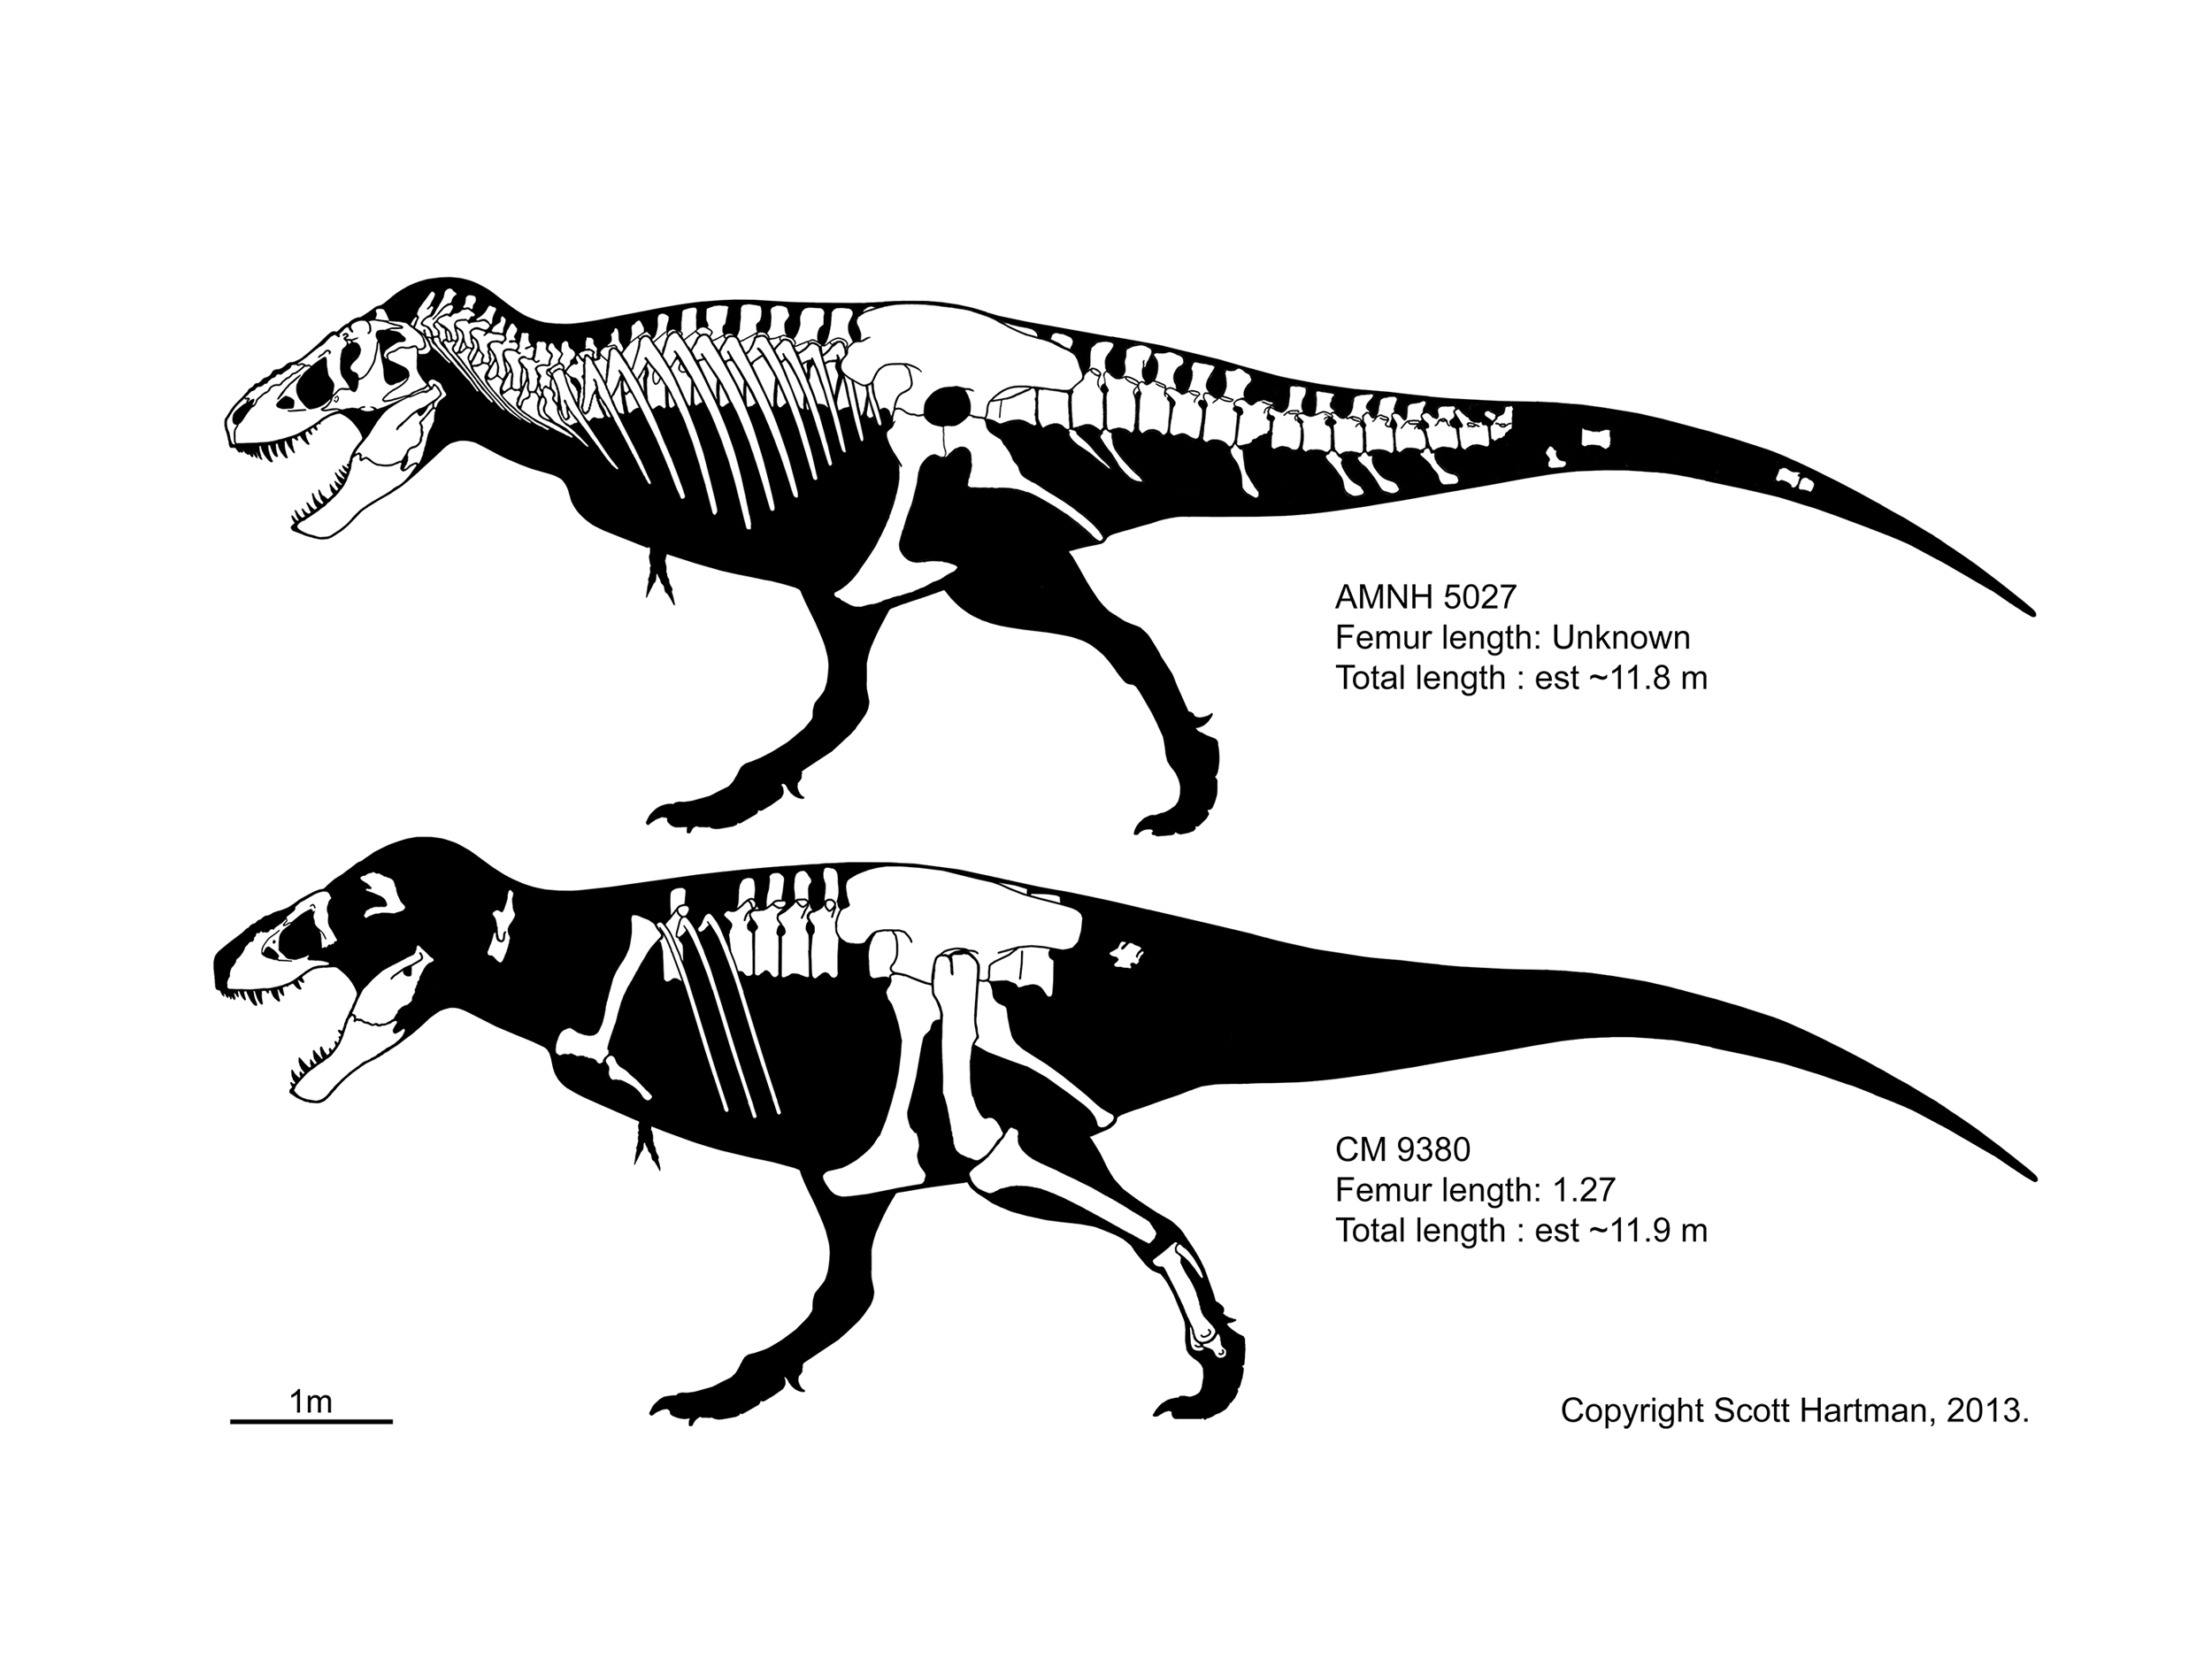 T. rex comparison